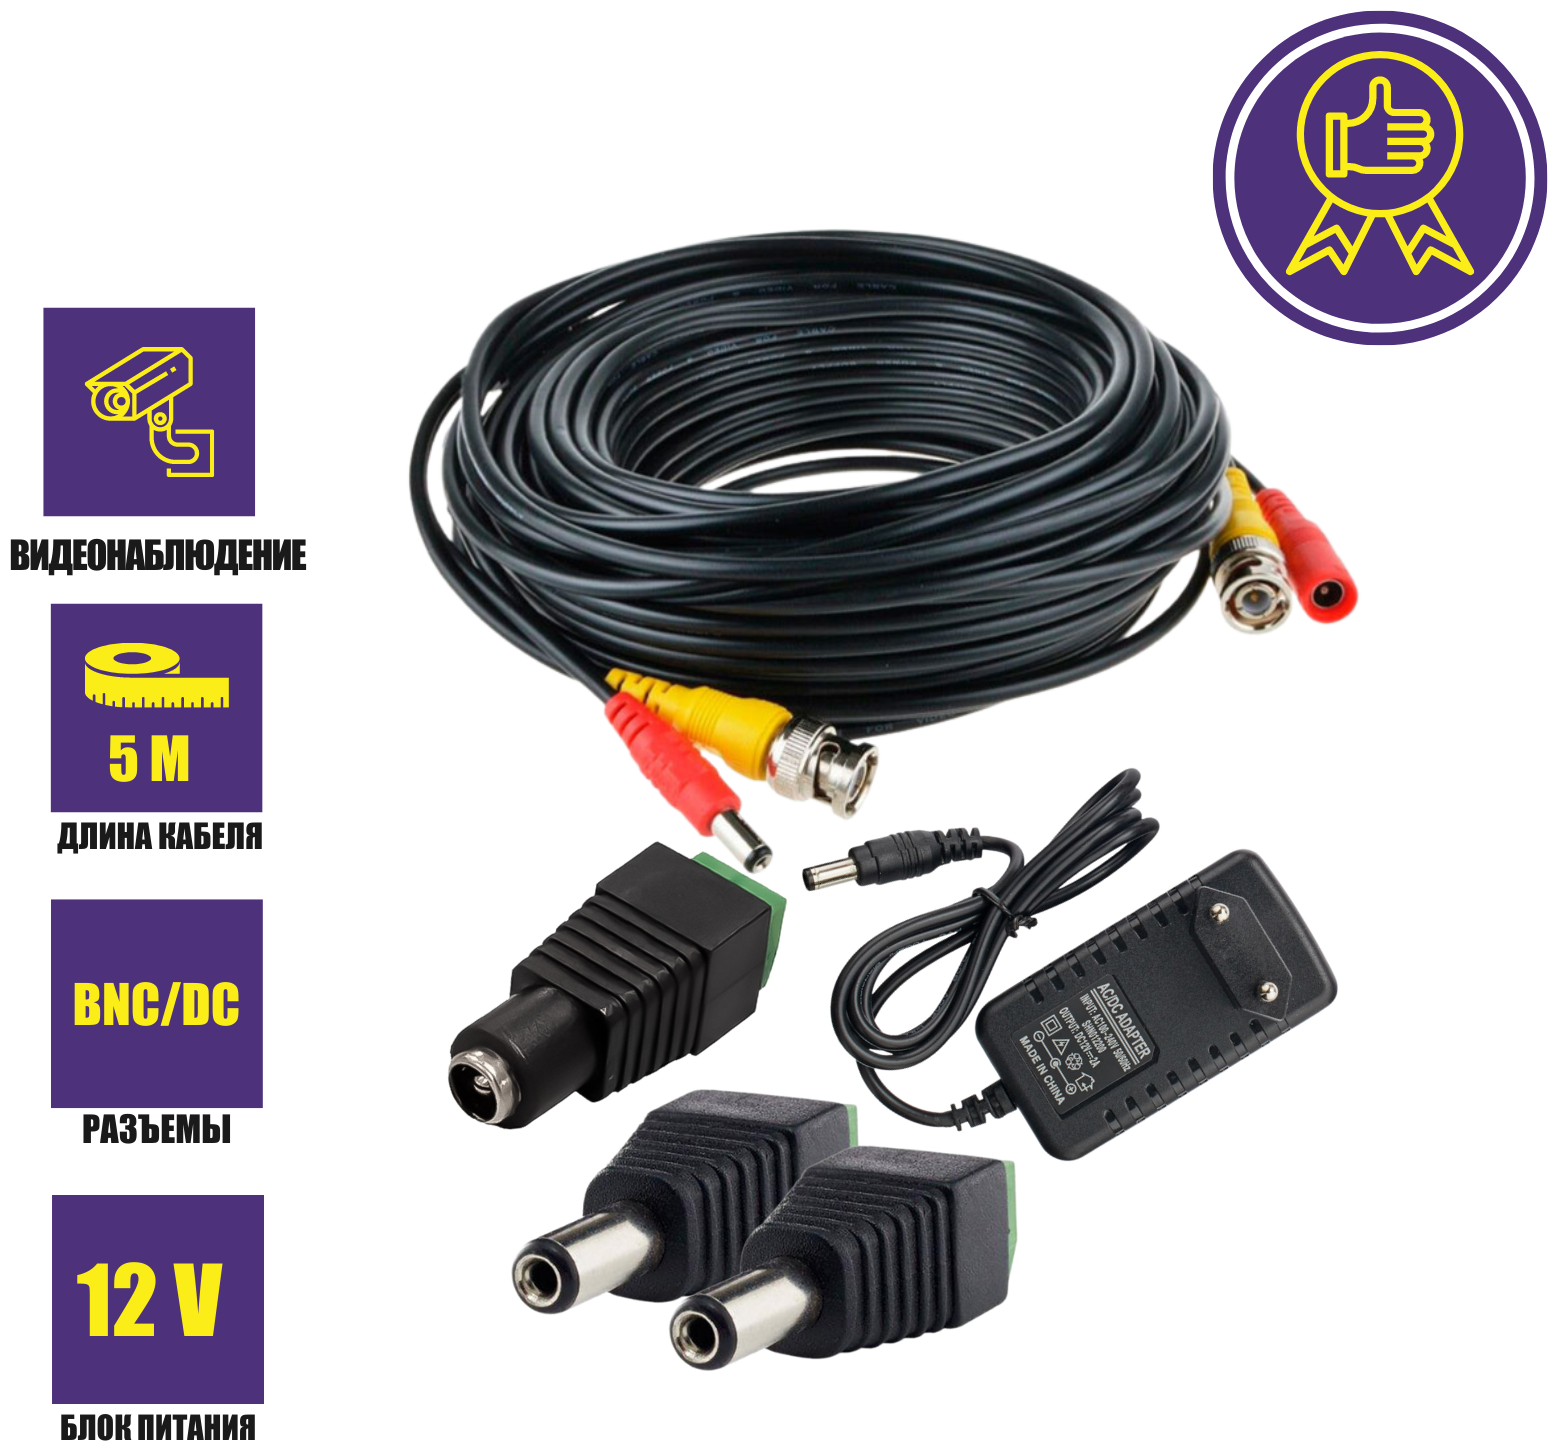 Комплект К-5.2 для системы видеонаблюдения: кабель BNC/DC 5 м переходники DC(мама) DC(папа) и блок питания